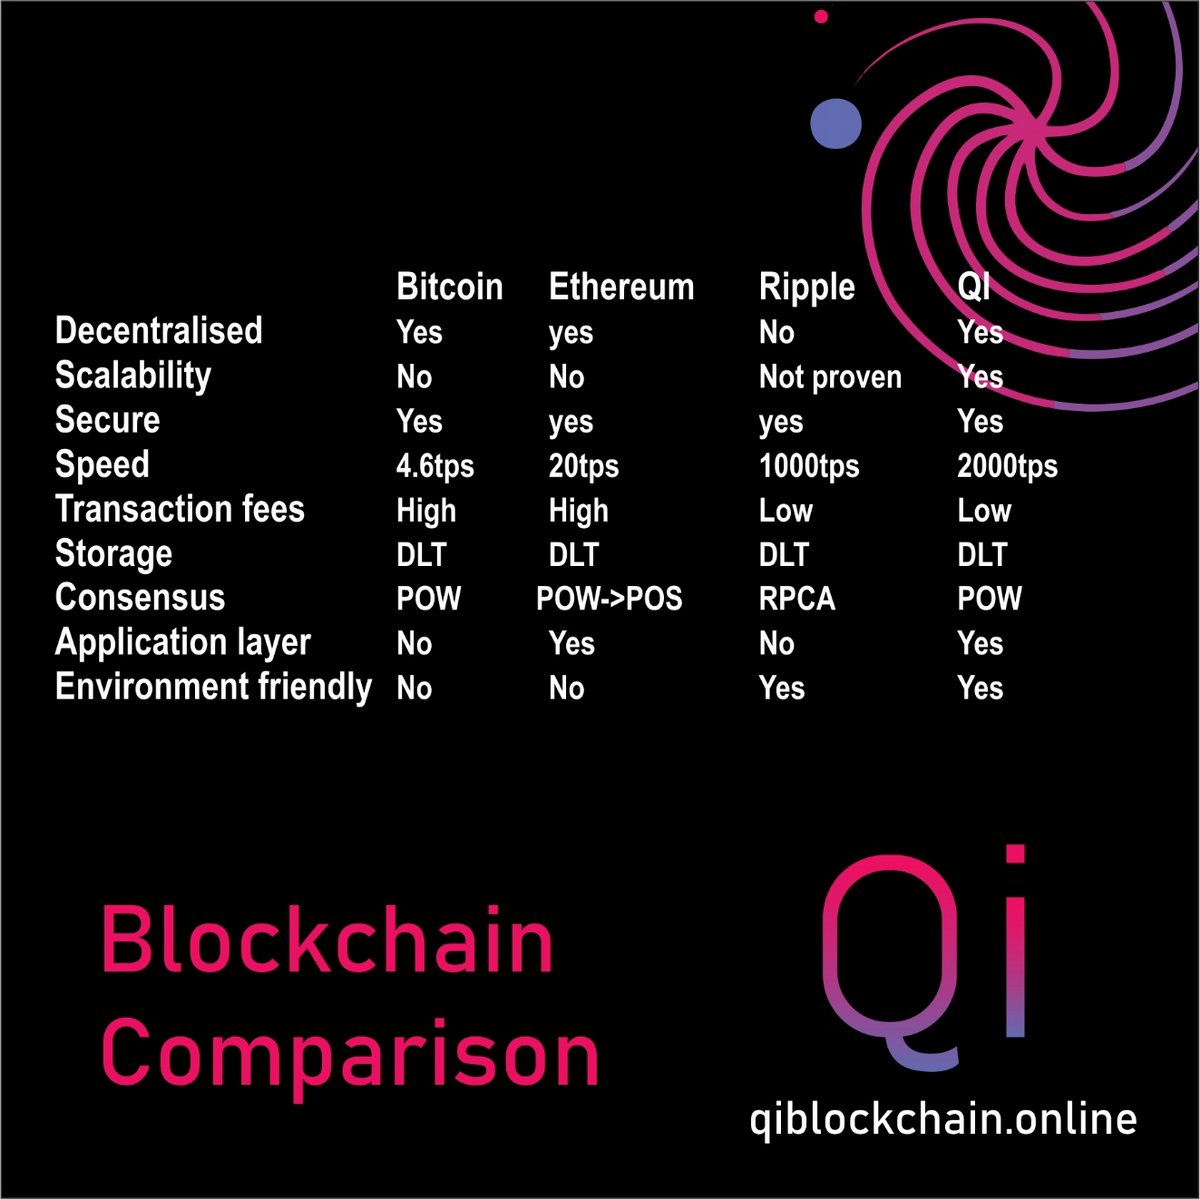 Blockchain comparison